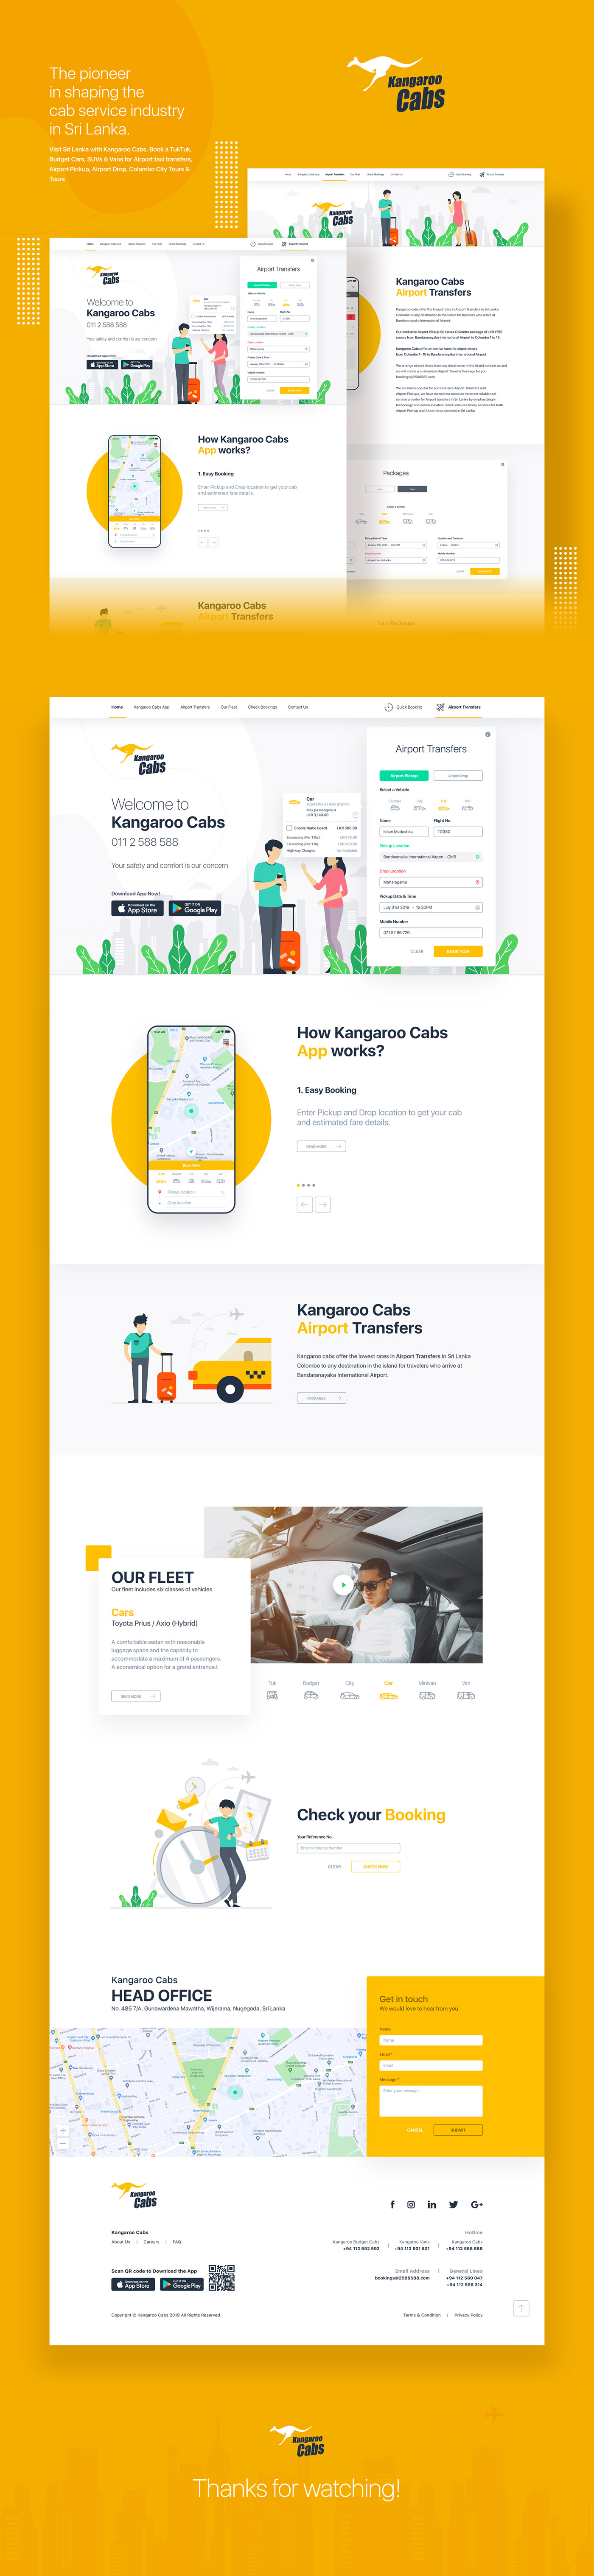 Webdesign Kangaroo cabs taxi website web site design Cab Website web design trends taxi cabs Uber